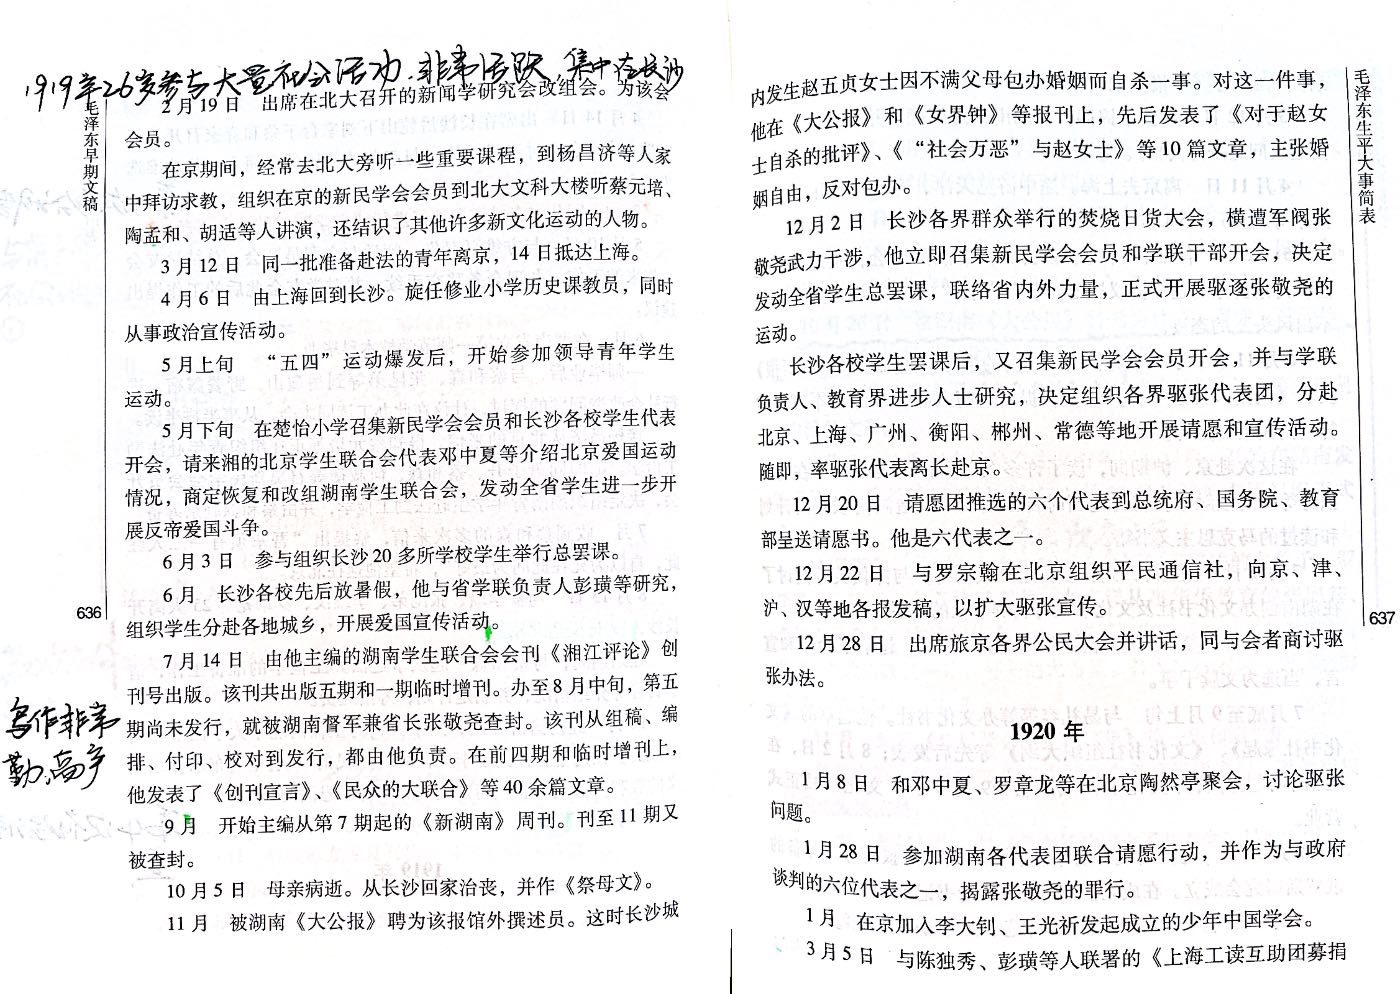 1893-1920毛泽东生平大事简表4.JPEG